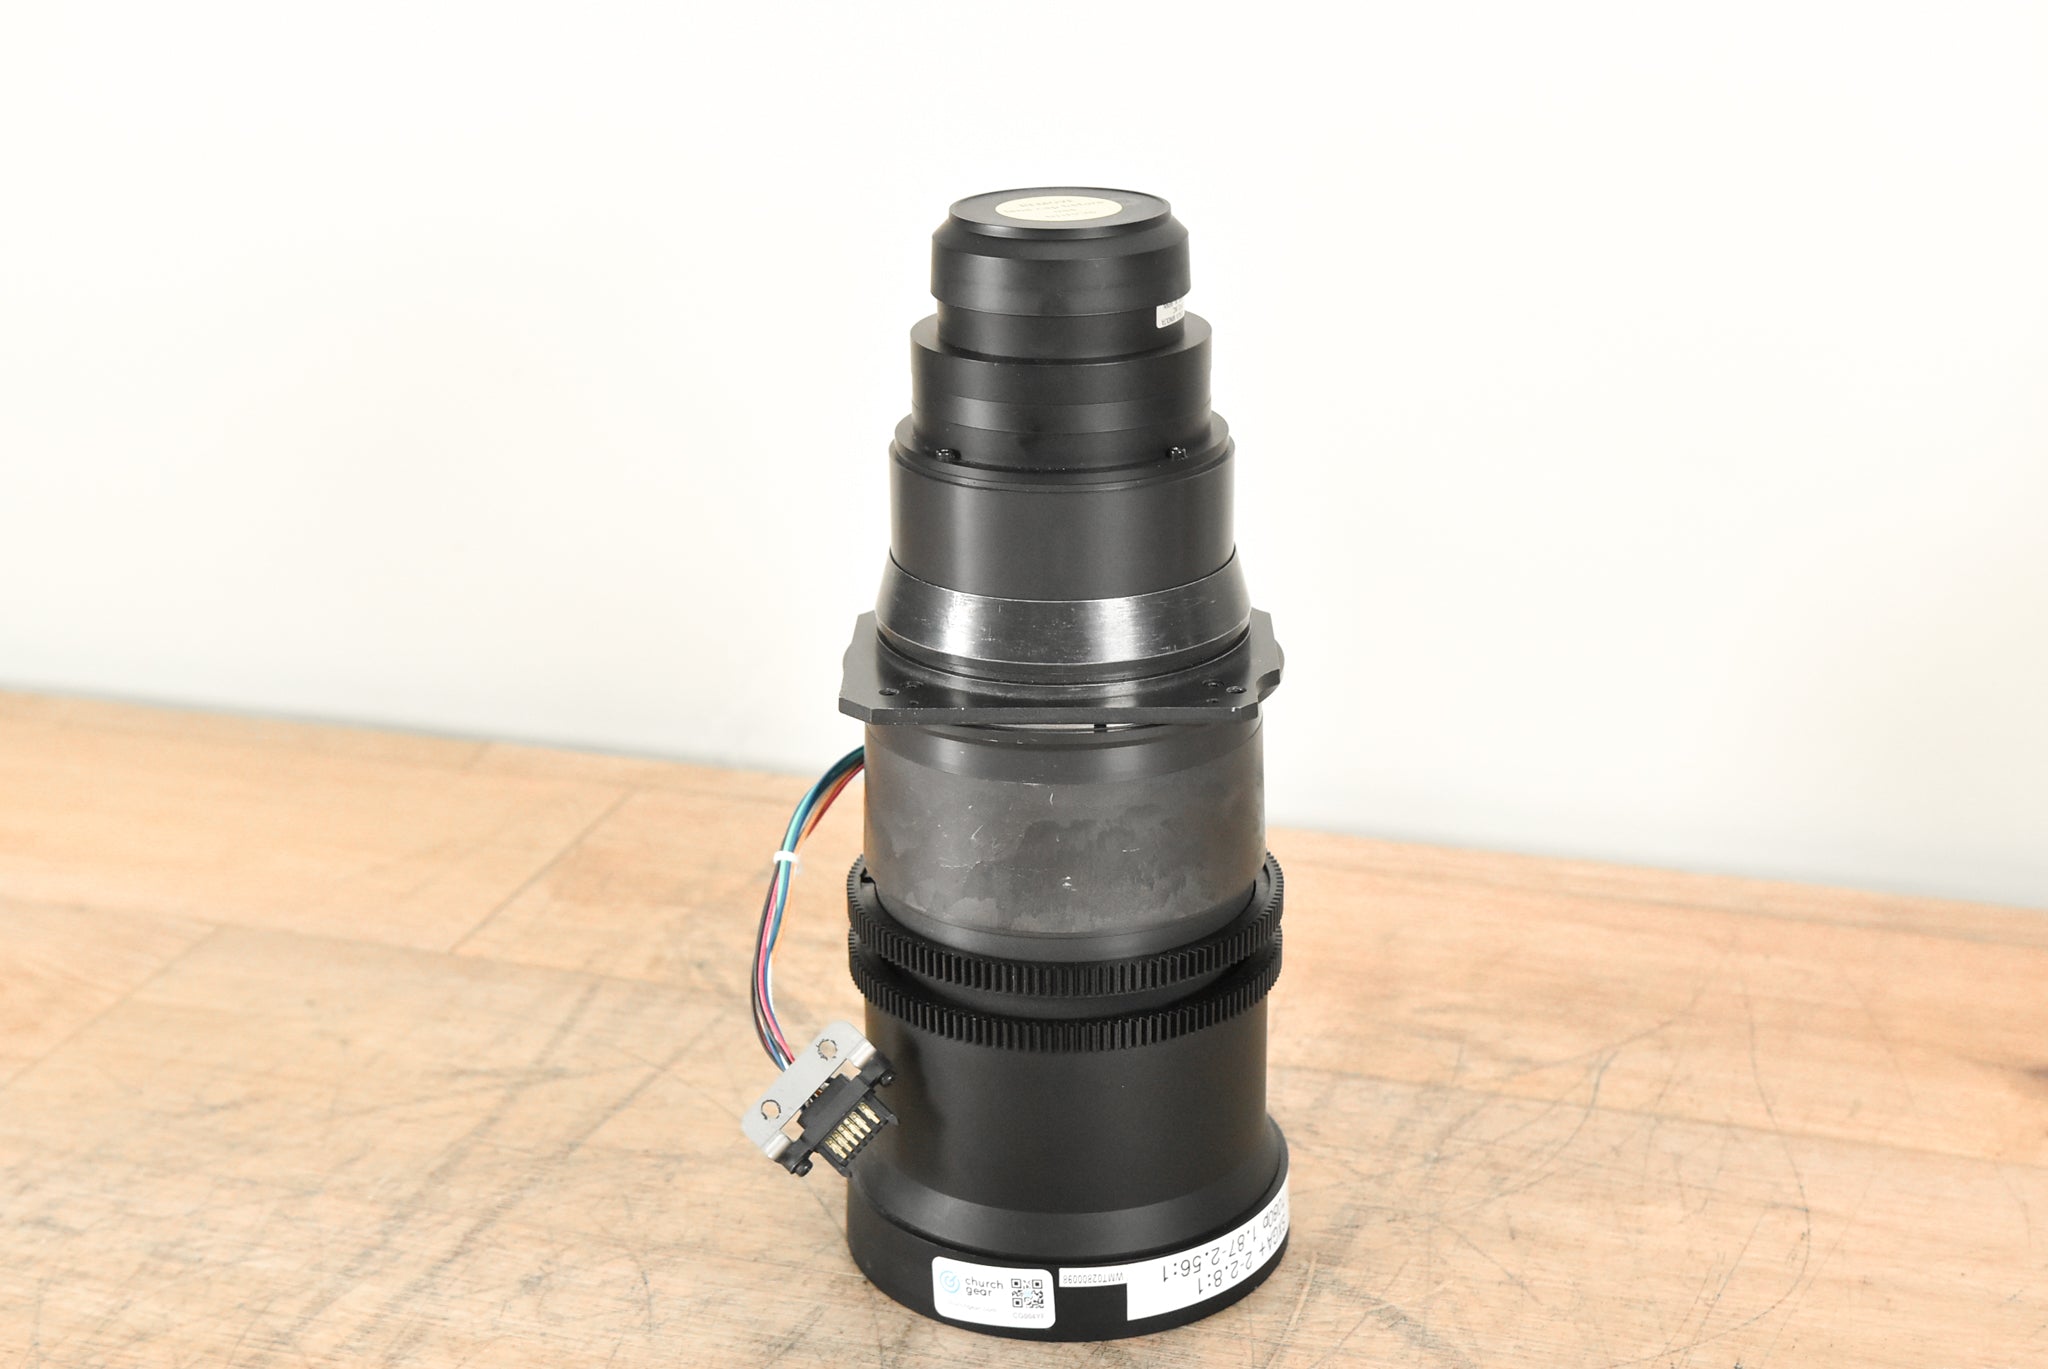 Konica Minolta 2-2.8:1 0.95 SXGA+ Zoom Lens for Barco Projectors